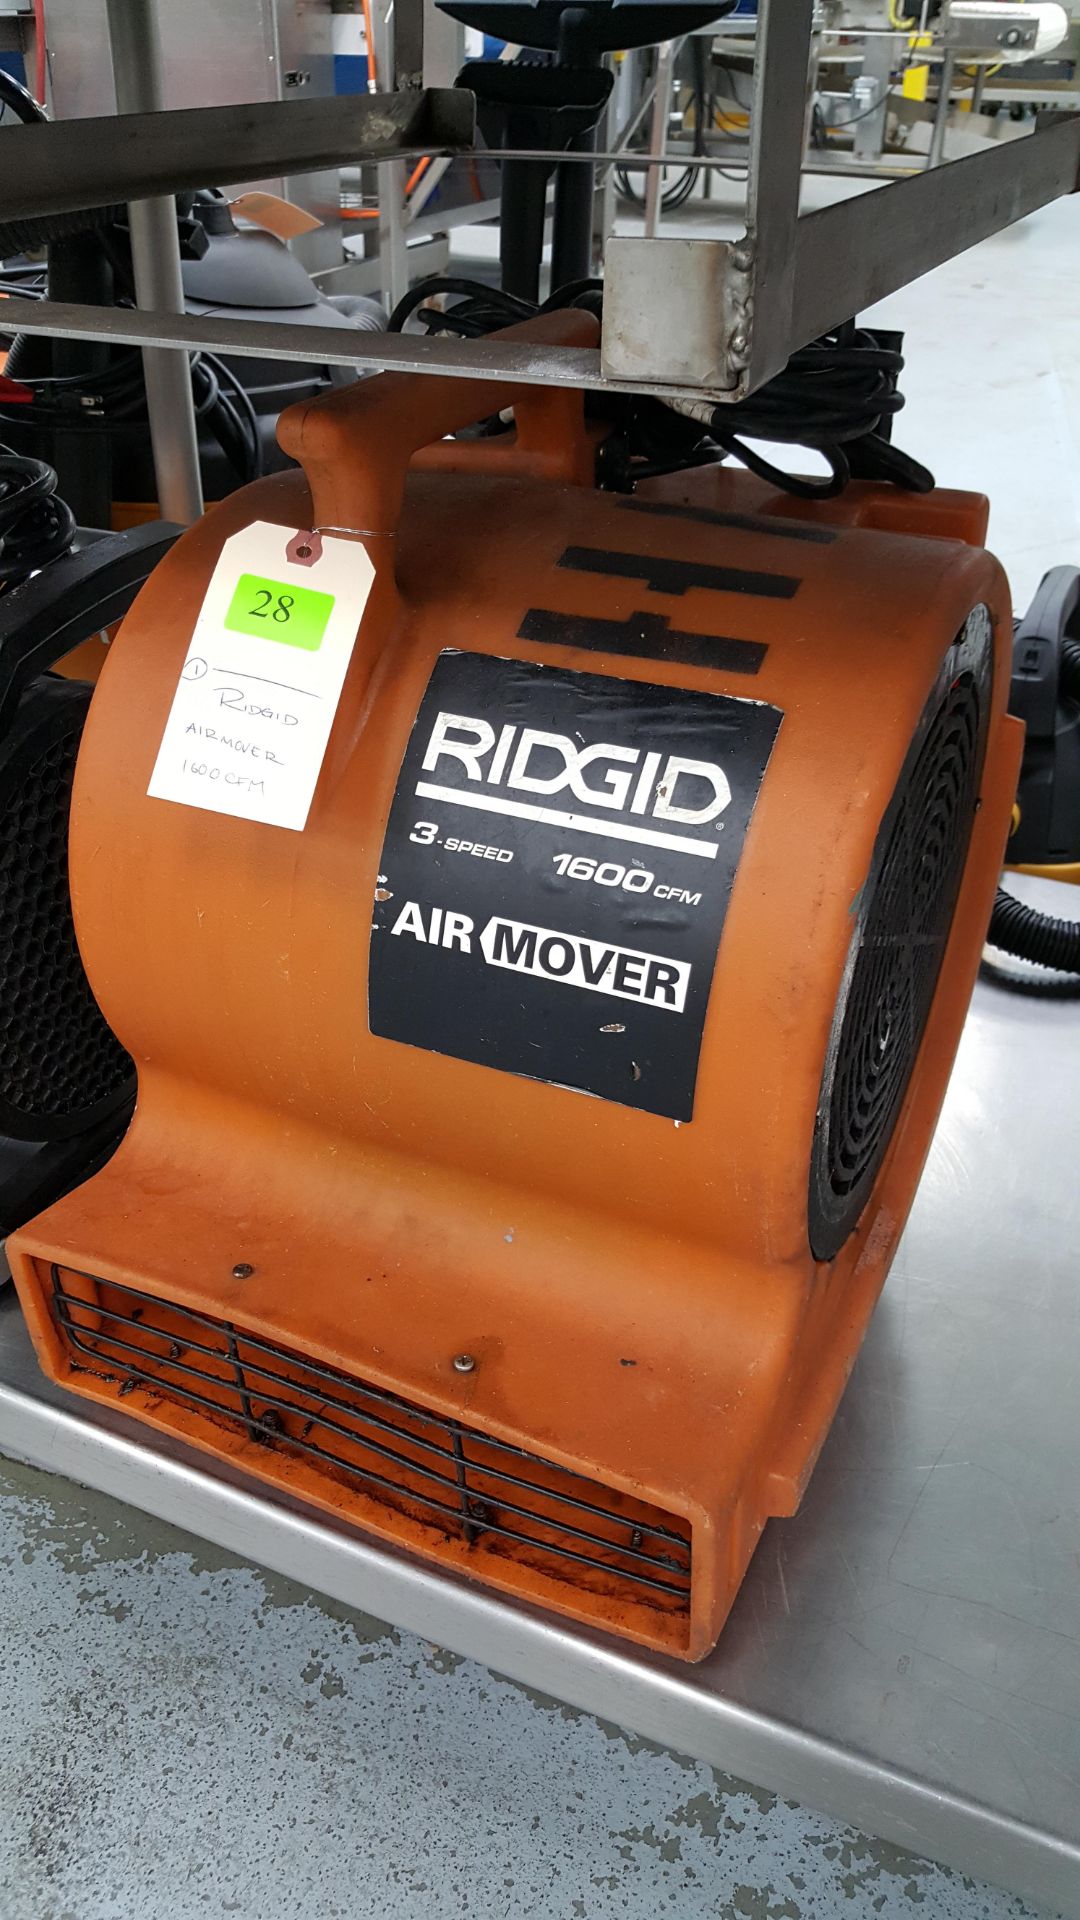 RIDGID AIR MOVER 1600CFM - Image 2 of 2